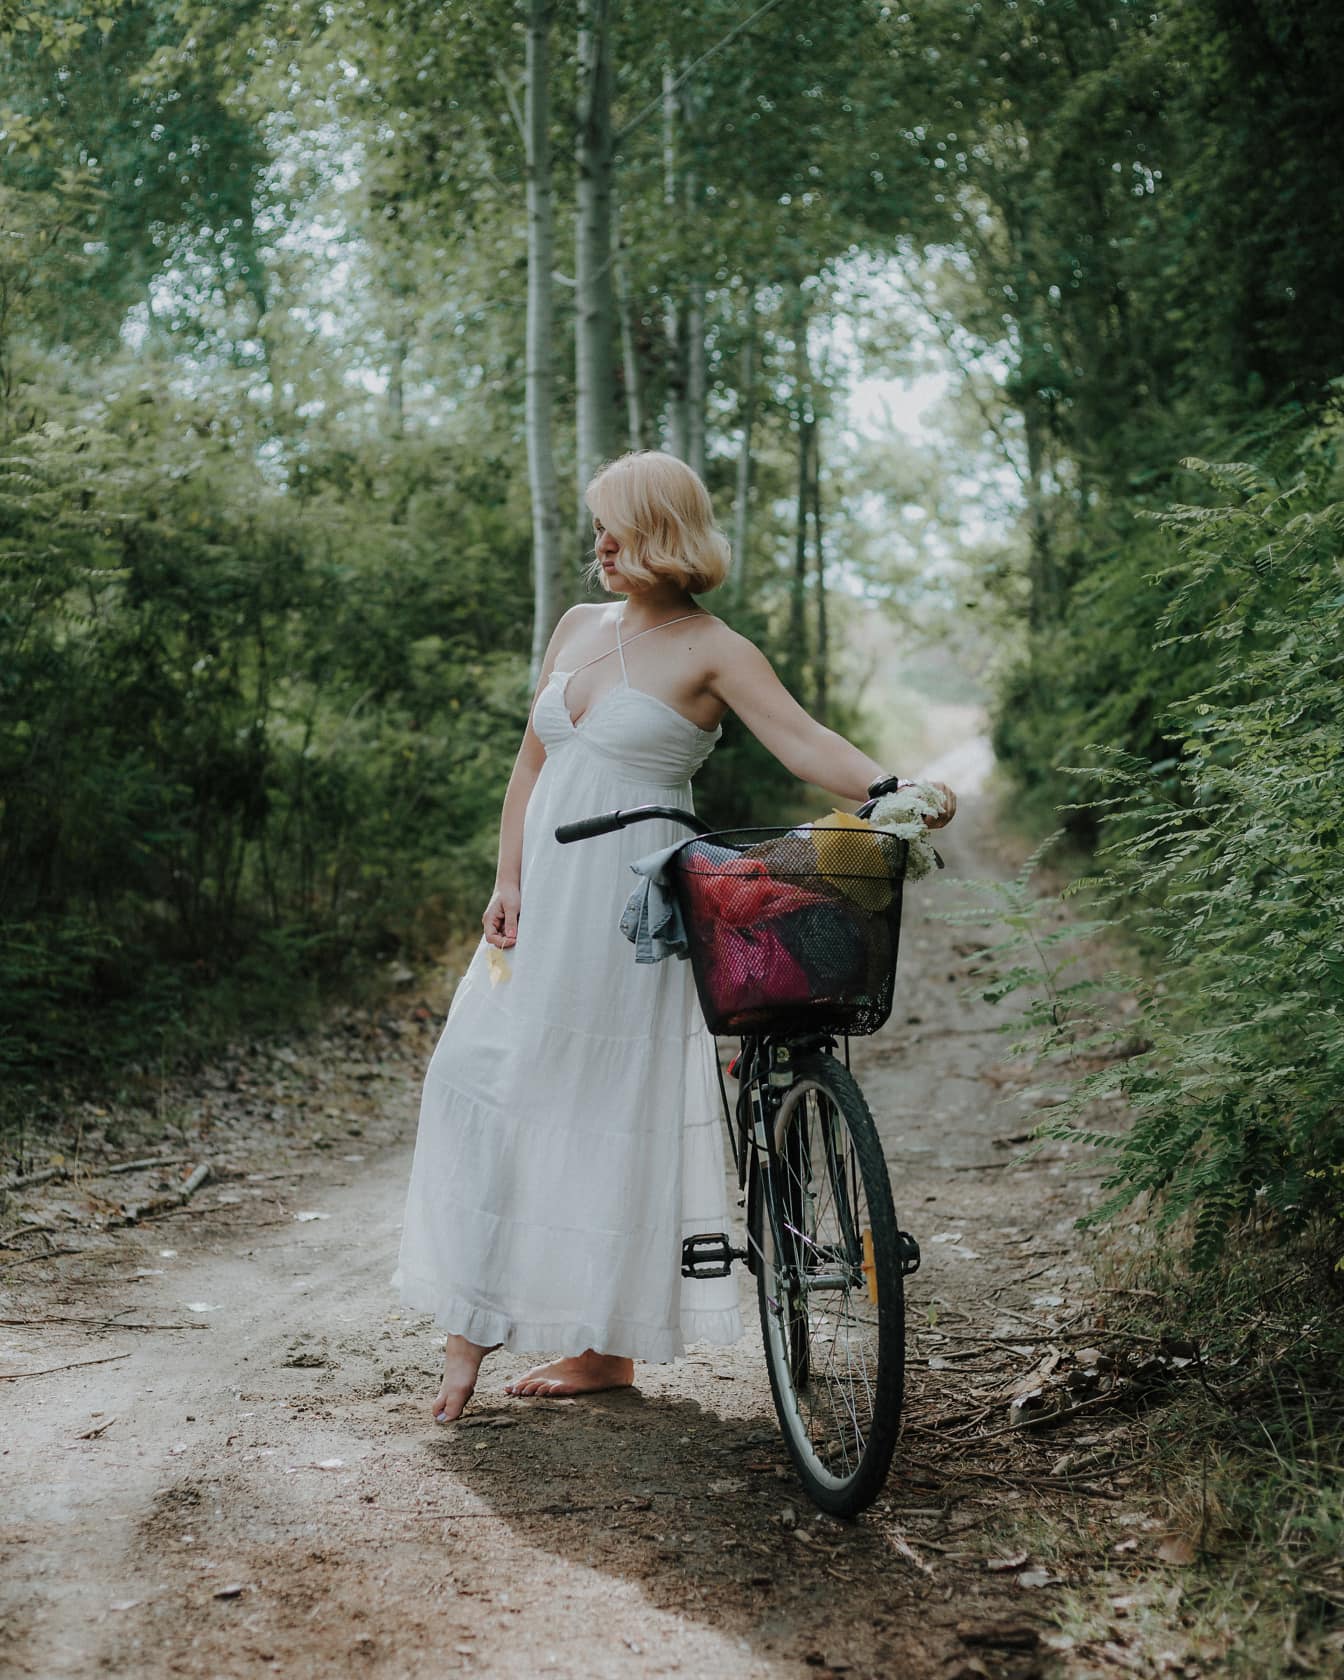 Signora bionda a piedi nudi in un vestito bianco con una bicicletta su un sentiero sterrato nella foresta